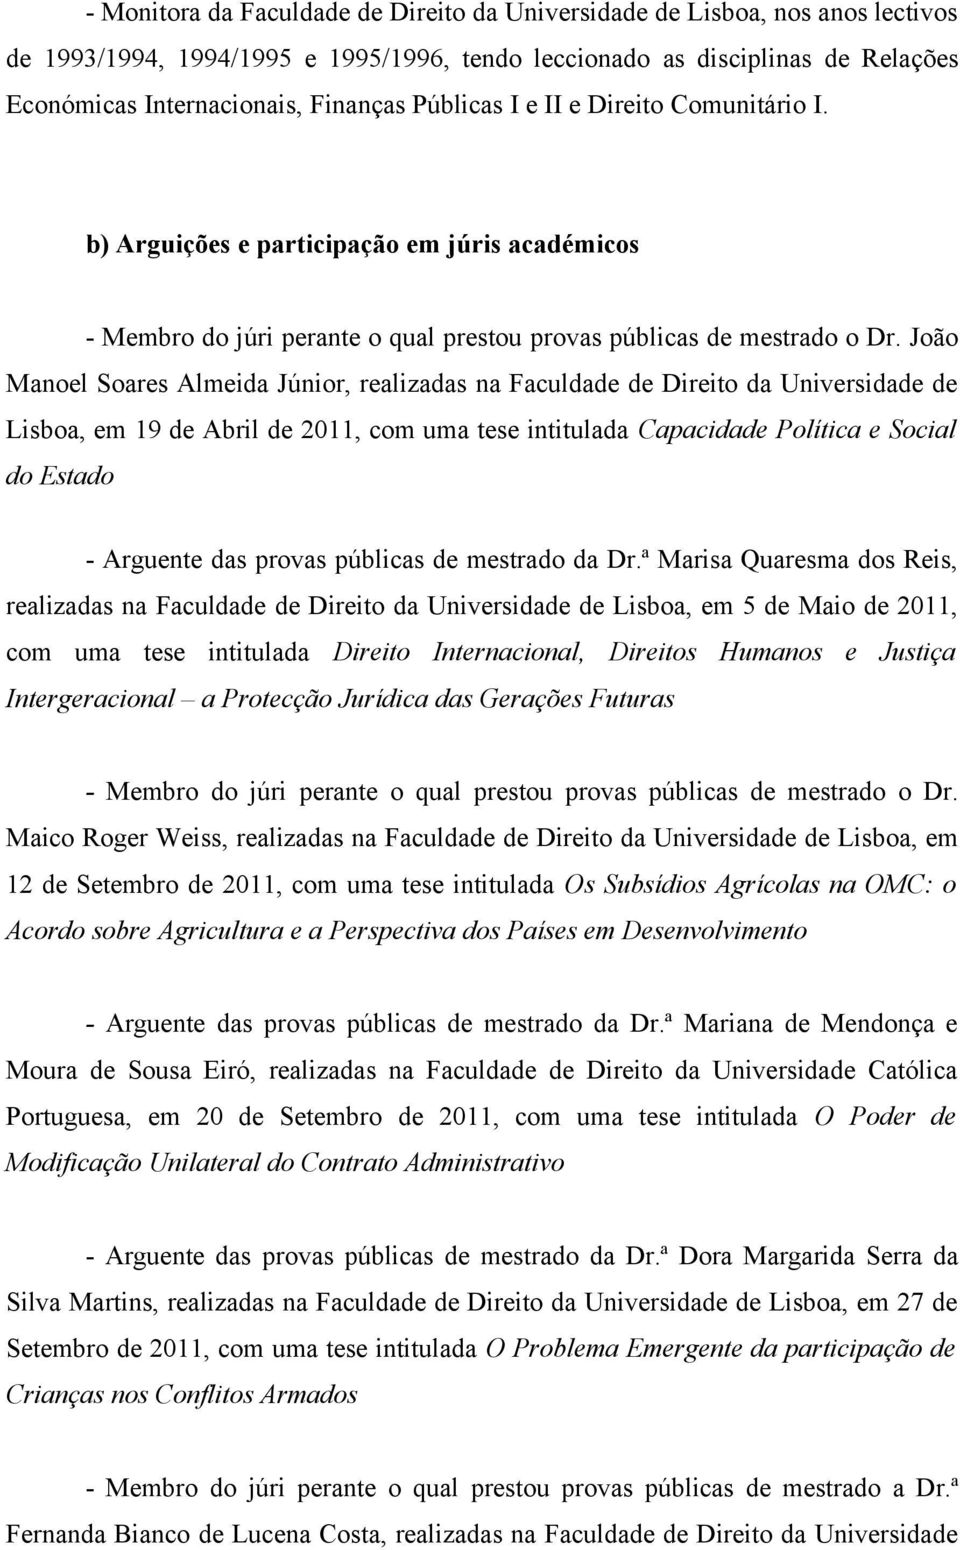 João Manoel Soares Almeida Júnior, realizadas na Faculdade de Direito da Universidade de Lisboa, em 19 de Abril de 2011, com uma tese intitulada Capacidade Política e Social do Estado - Arguente das